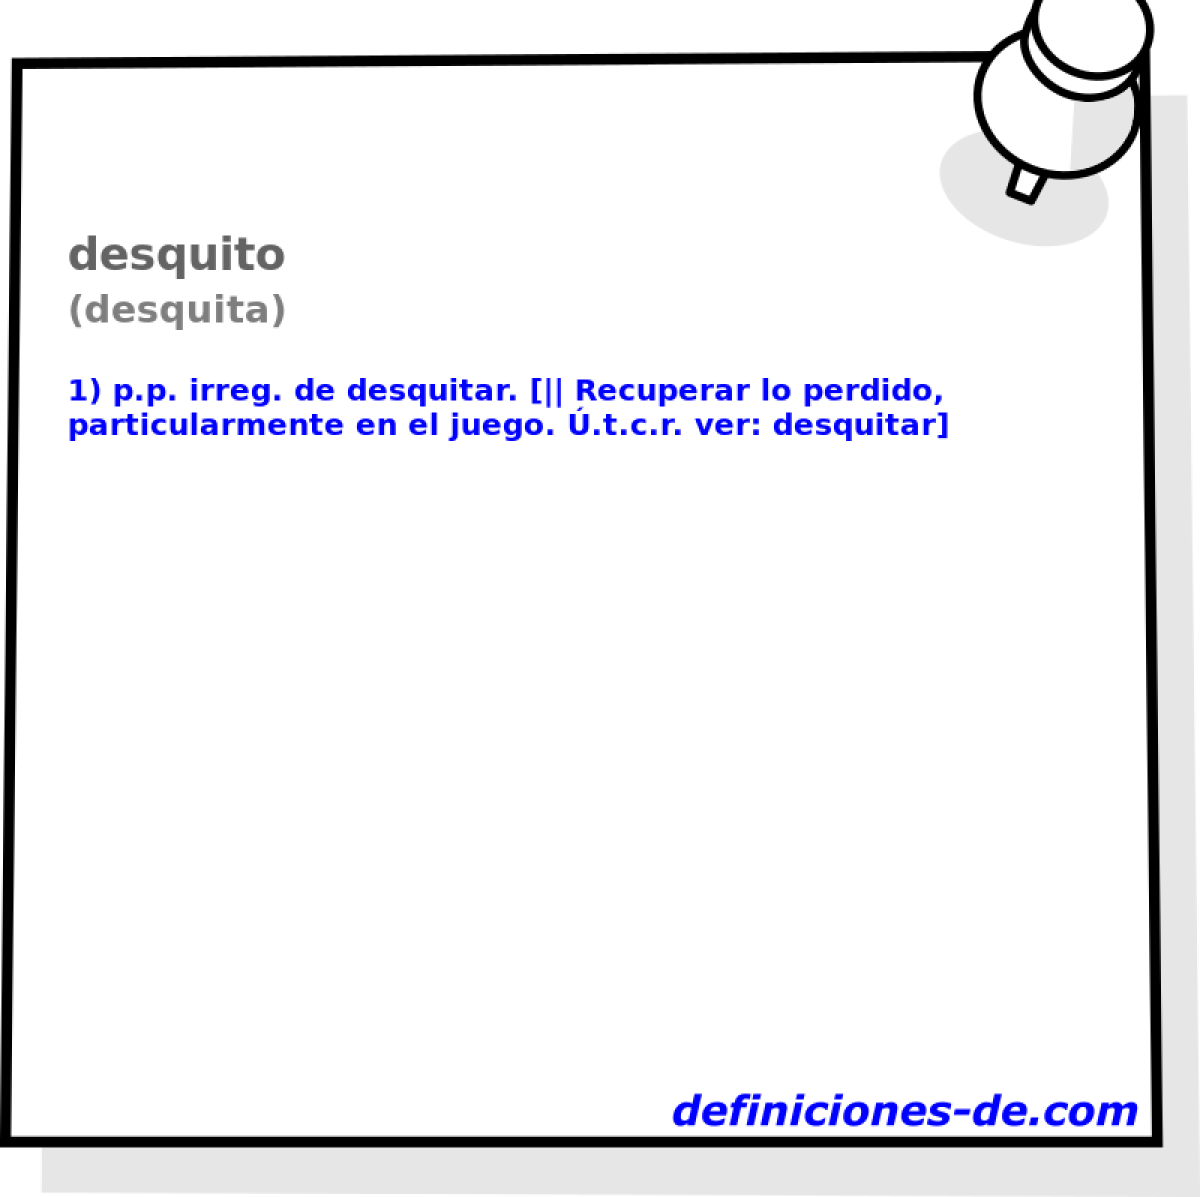 desquito (desquita)